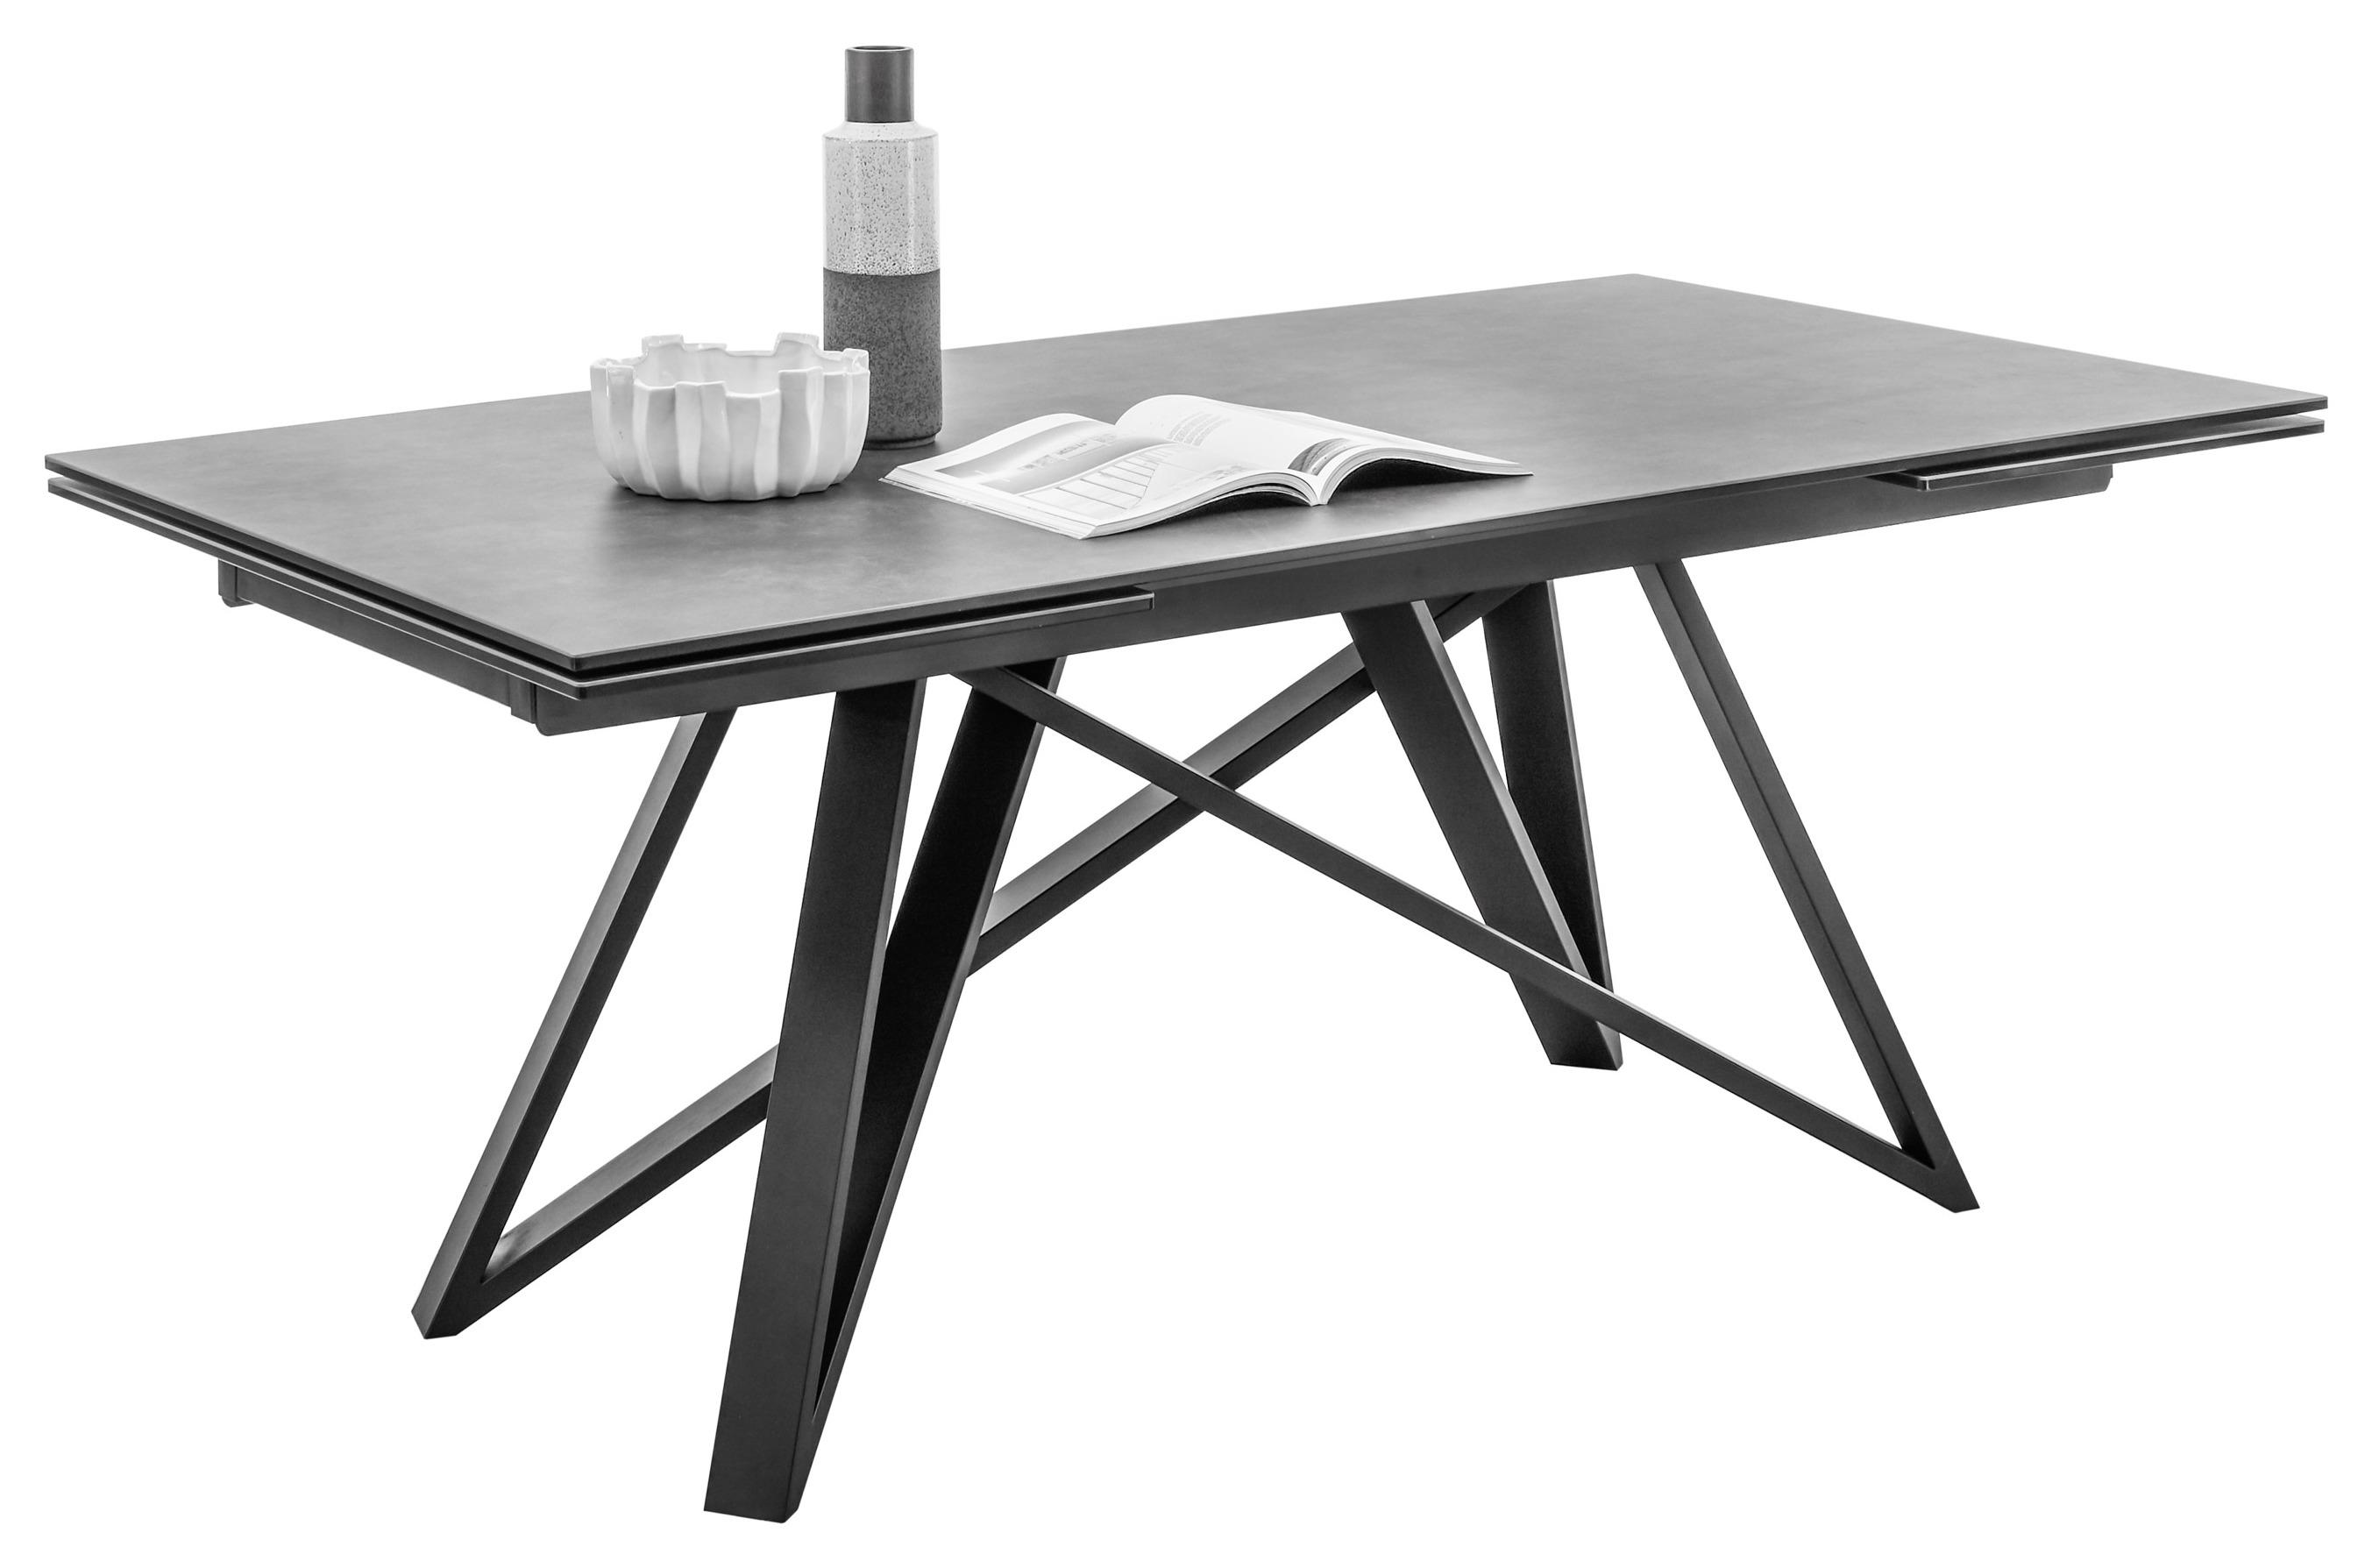 Jídelní Stůl Charly 180-280 Cm - černá/antracitová, Design, kov/sklo (180-280/95/75cm) - MID.YOU